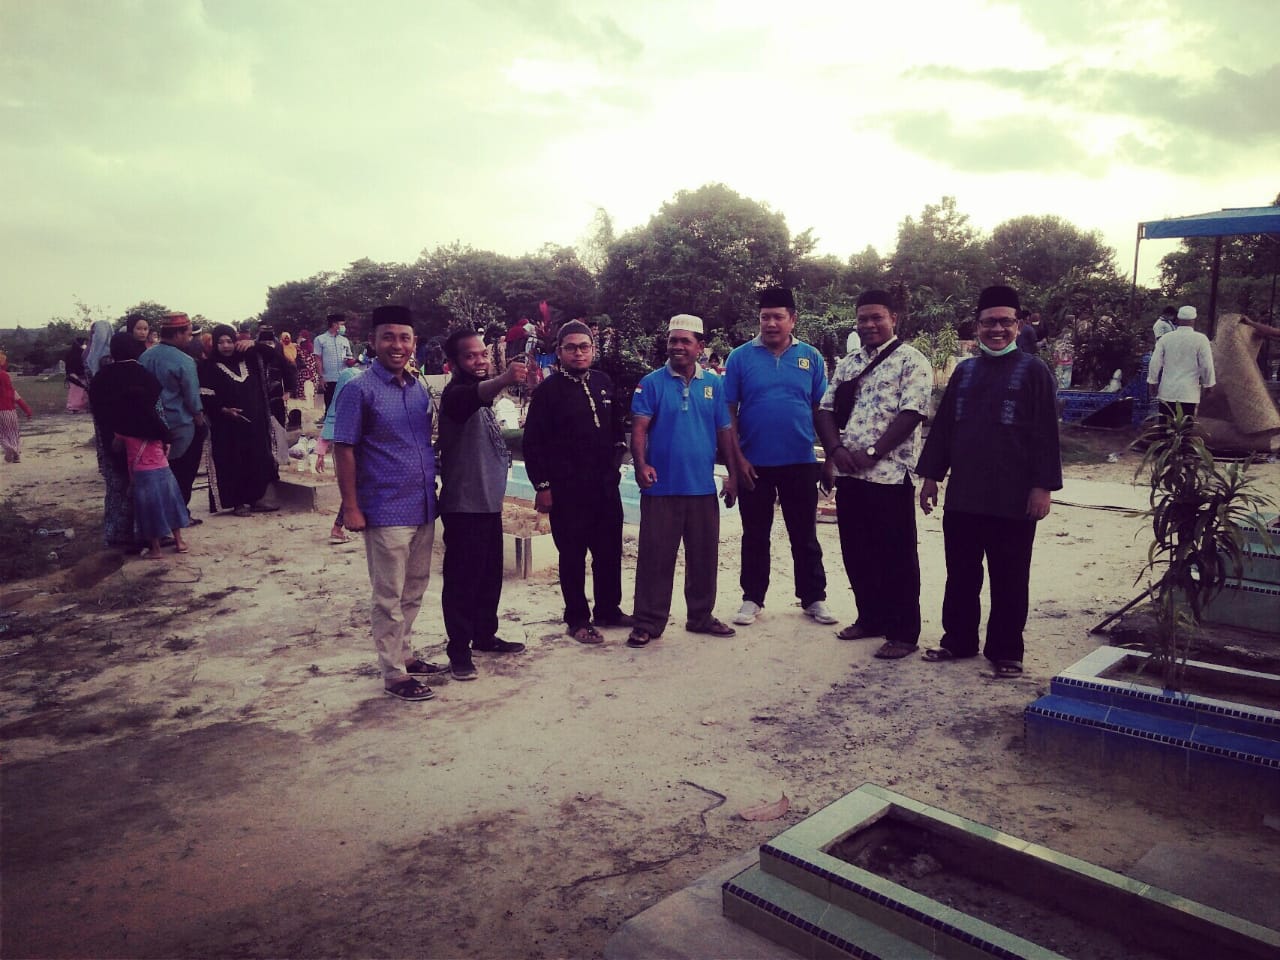 Ziarah Kubur di TPU Pangkalan Kerinci, Ratusan Masyarakat Minta Cepat Realisasikan Lahan Kuburan Baru